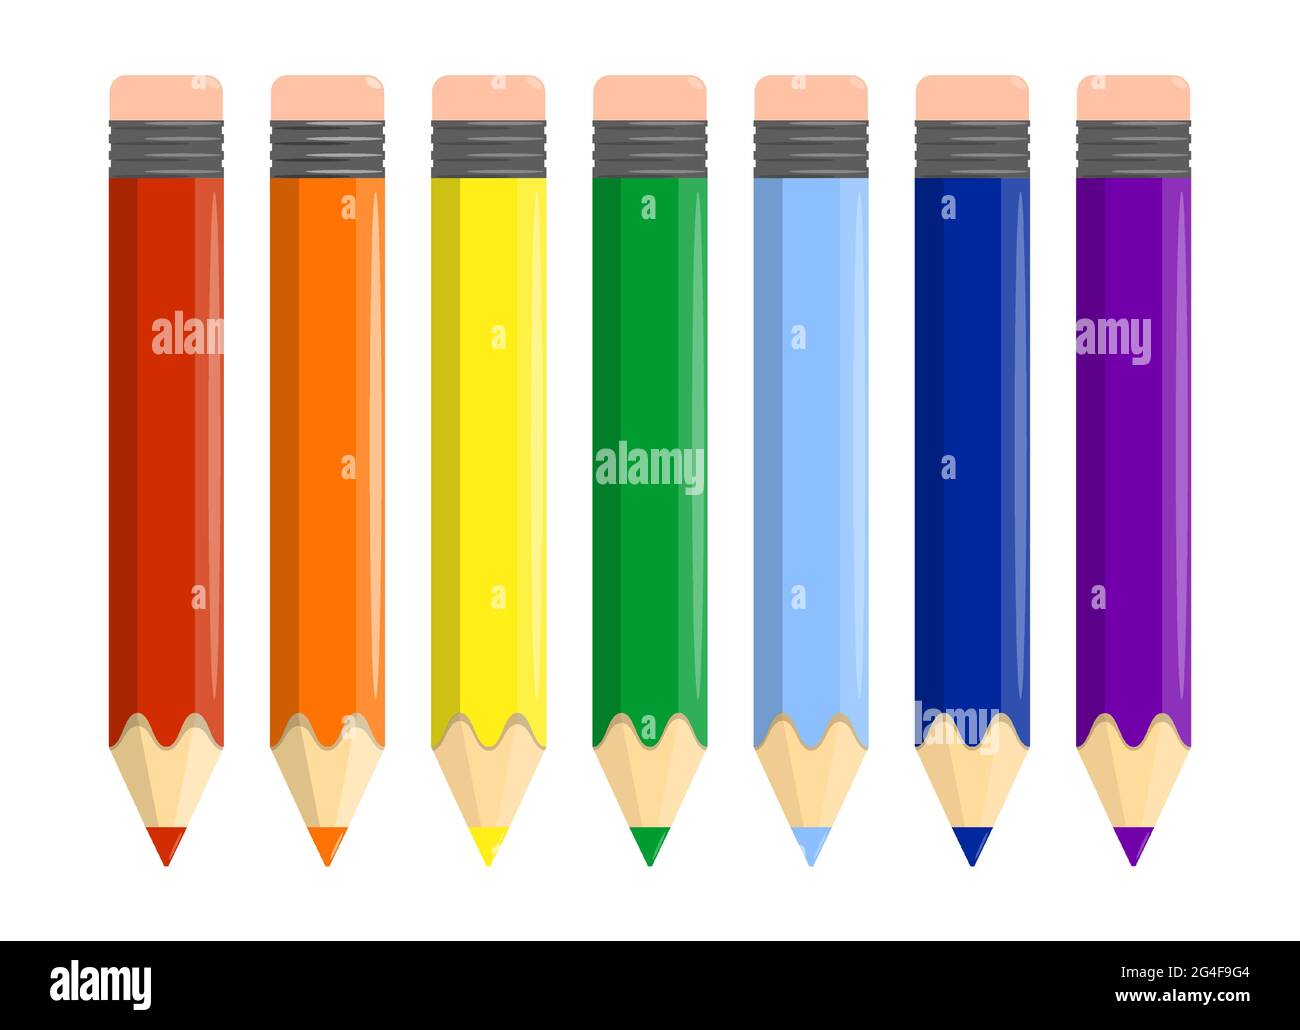 Lápices de Colores para Niños